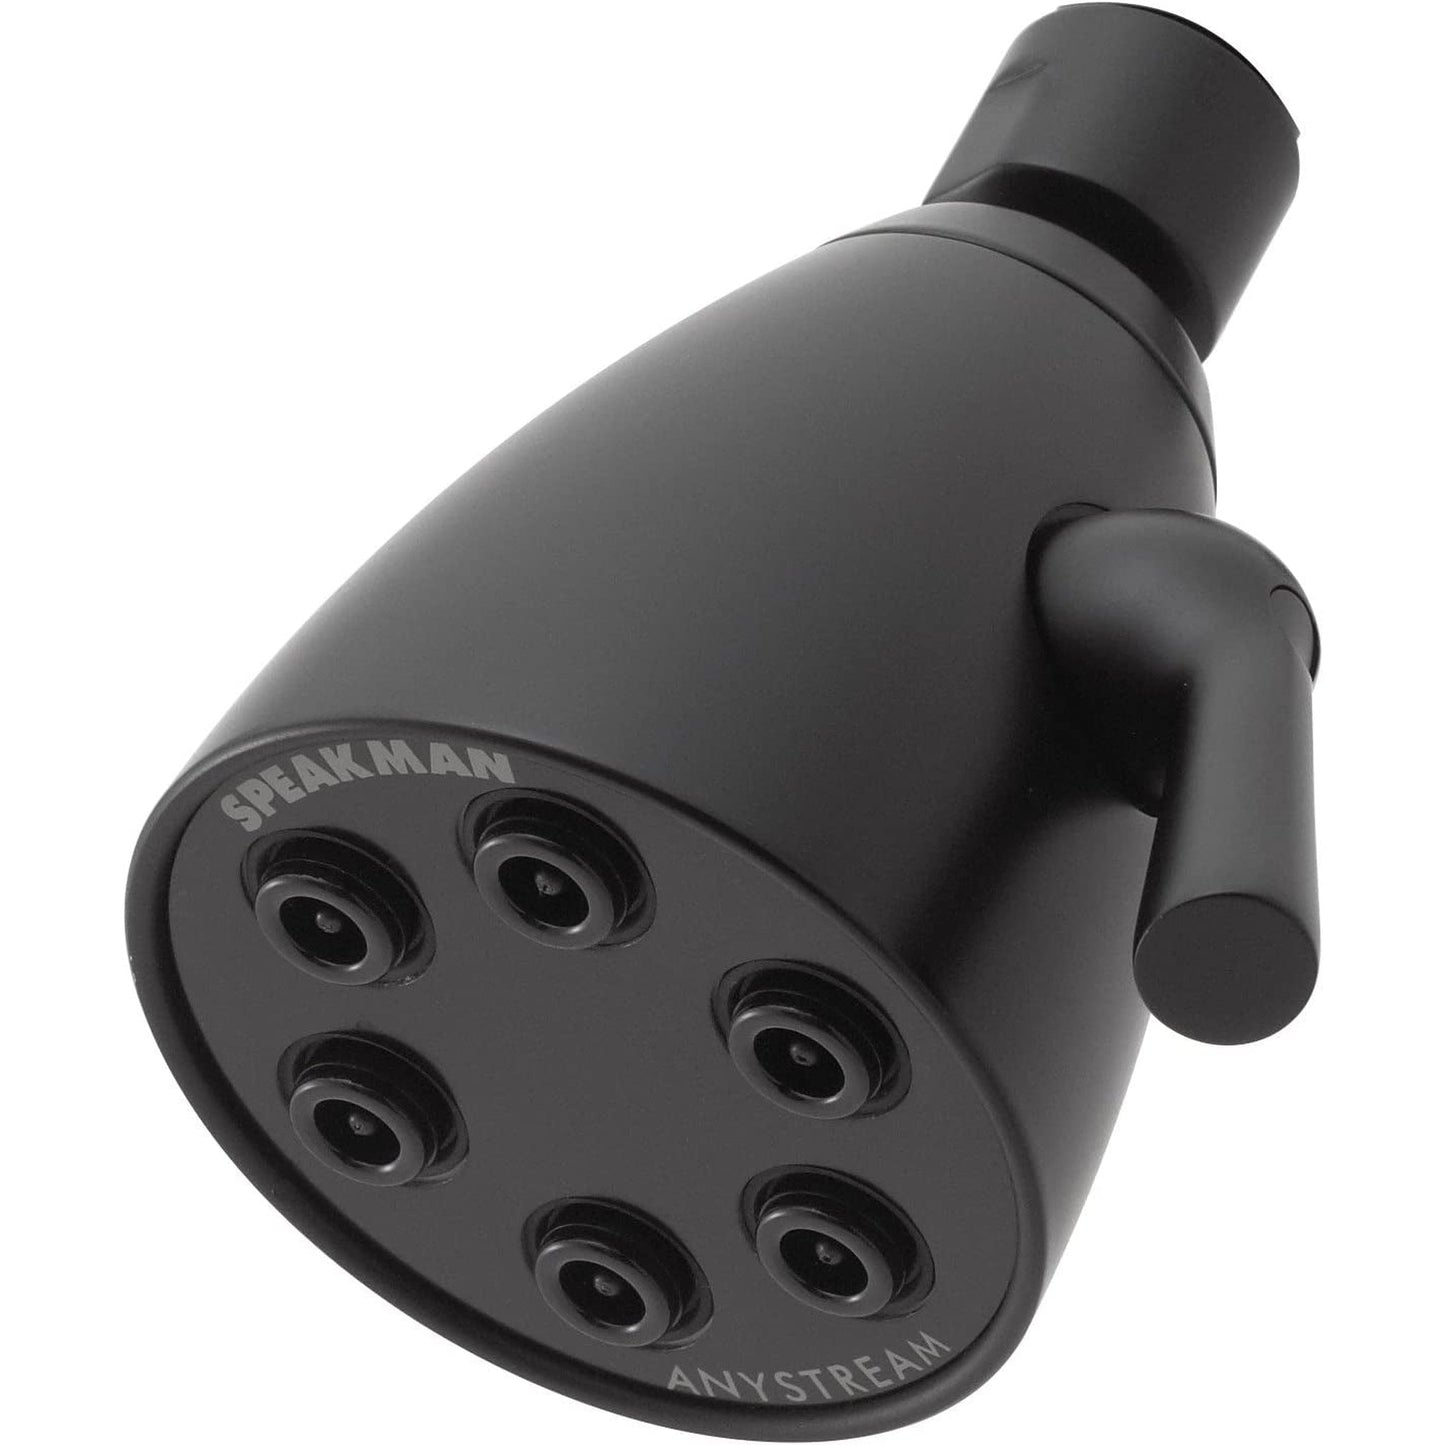 Speakman Icon 6-Jet 3-Spray Pattern 2.5 GPM Solid Brass Shower Head in Matte Black Finish